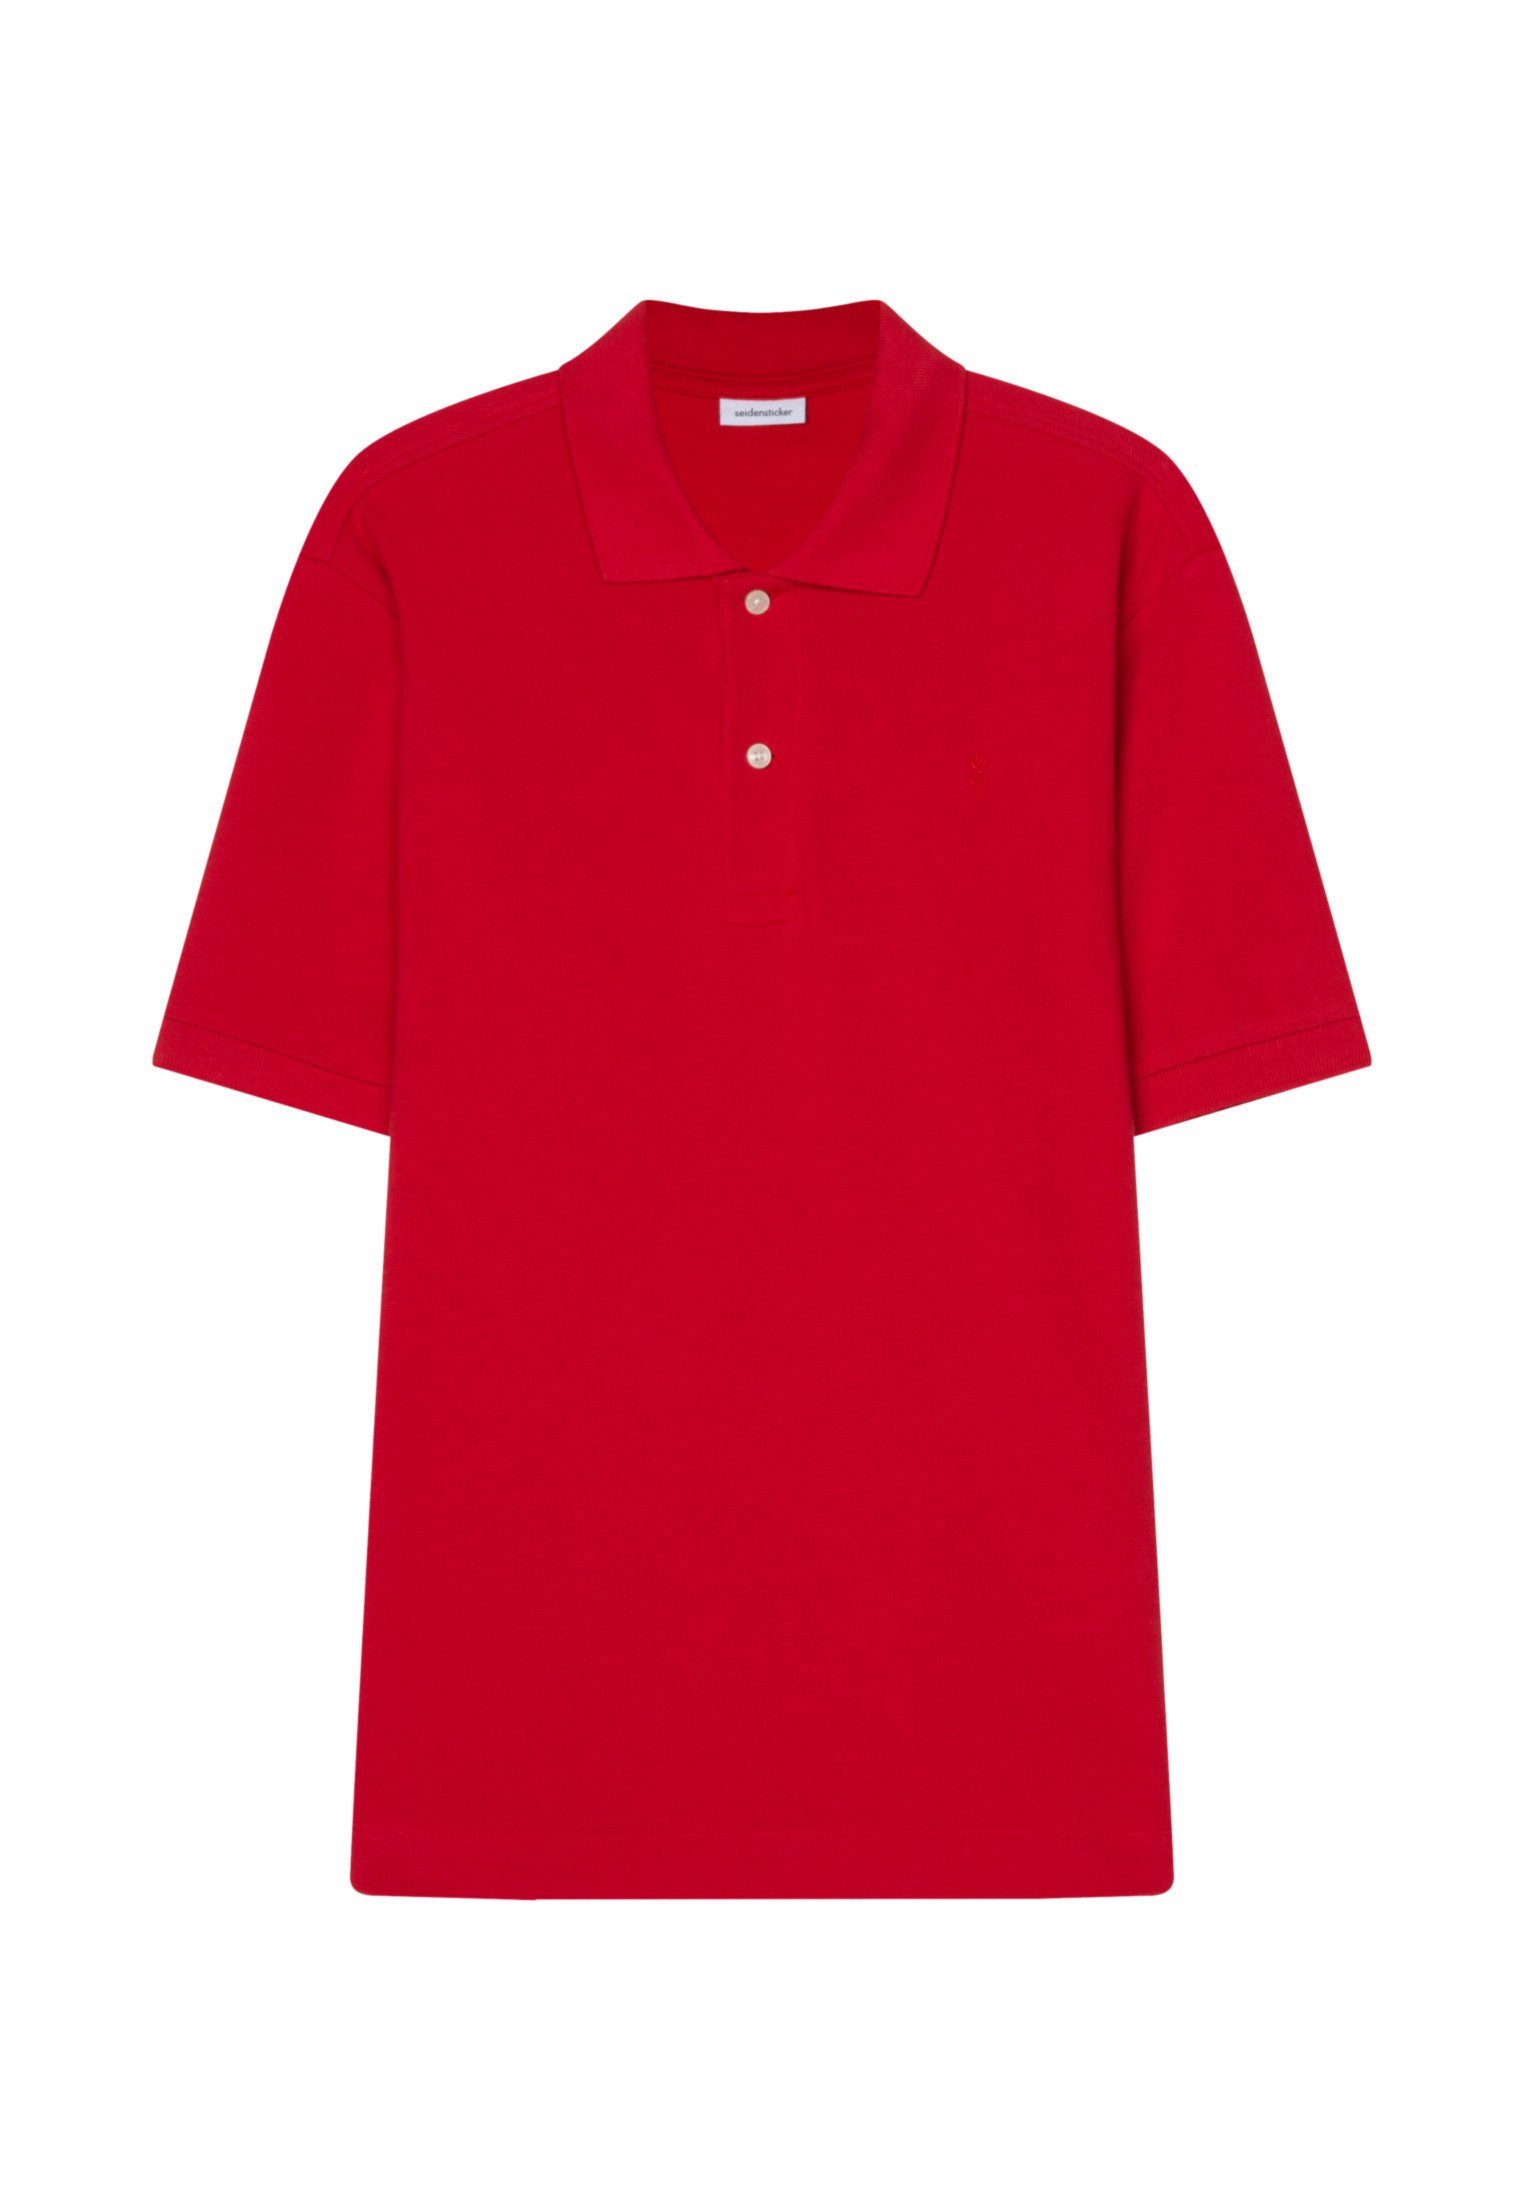 Kurzarm Uni Poloshirt Rot Kragen seidensticker Regular